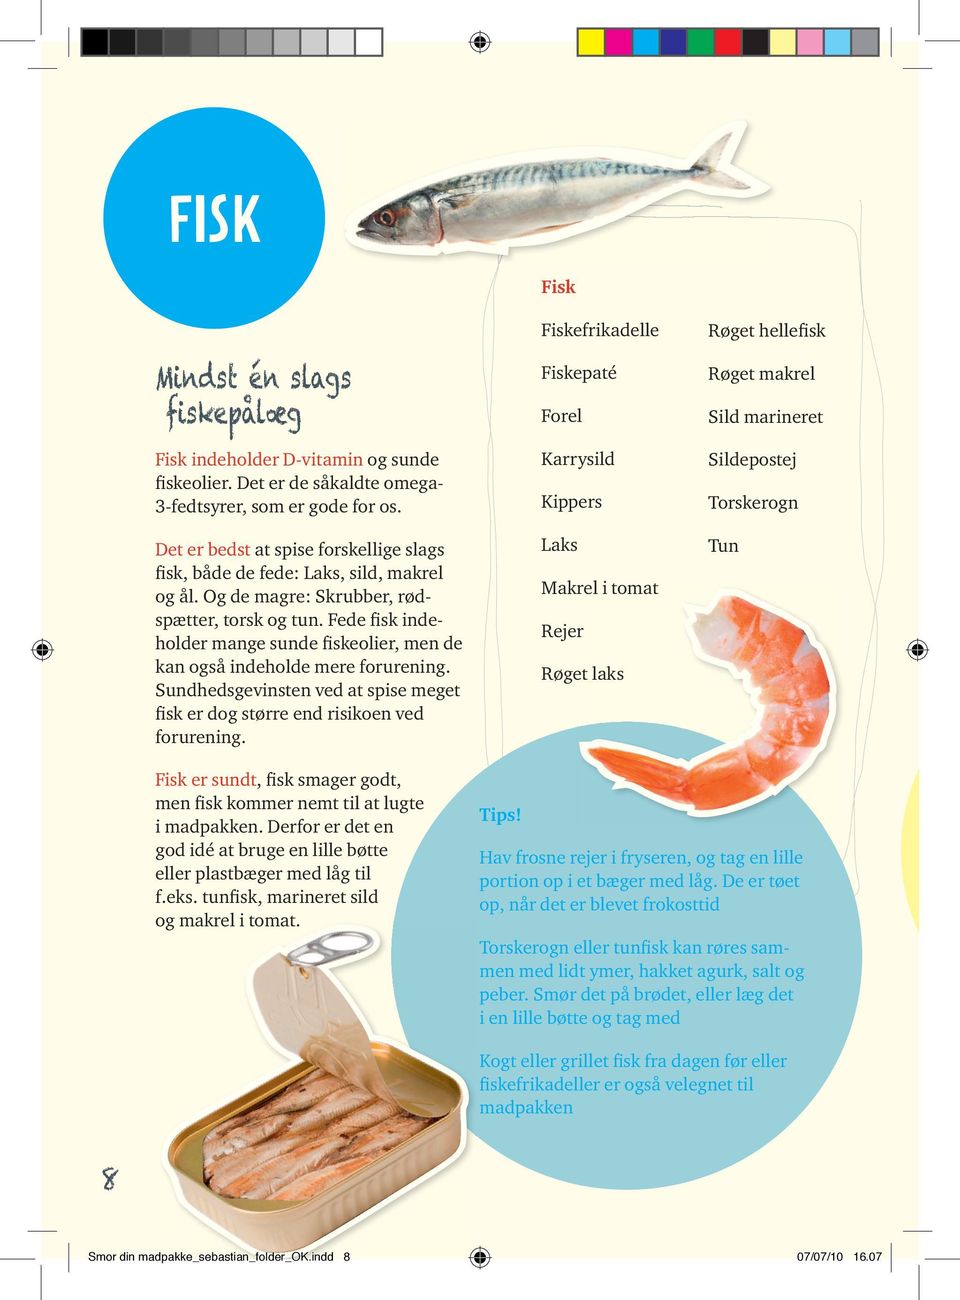 Fede fisk indeholder mange sunde fiskeolier, men de kan også indeholde mere forurening. Sundhedsgevinsten ved at spise meget fisk er dog større end risikoen ved forurening.